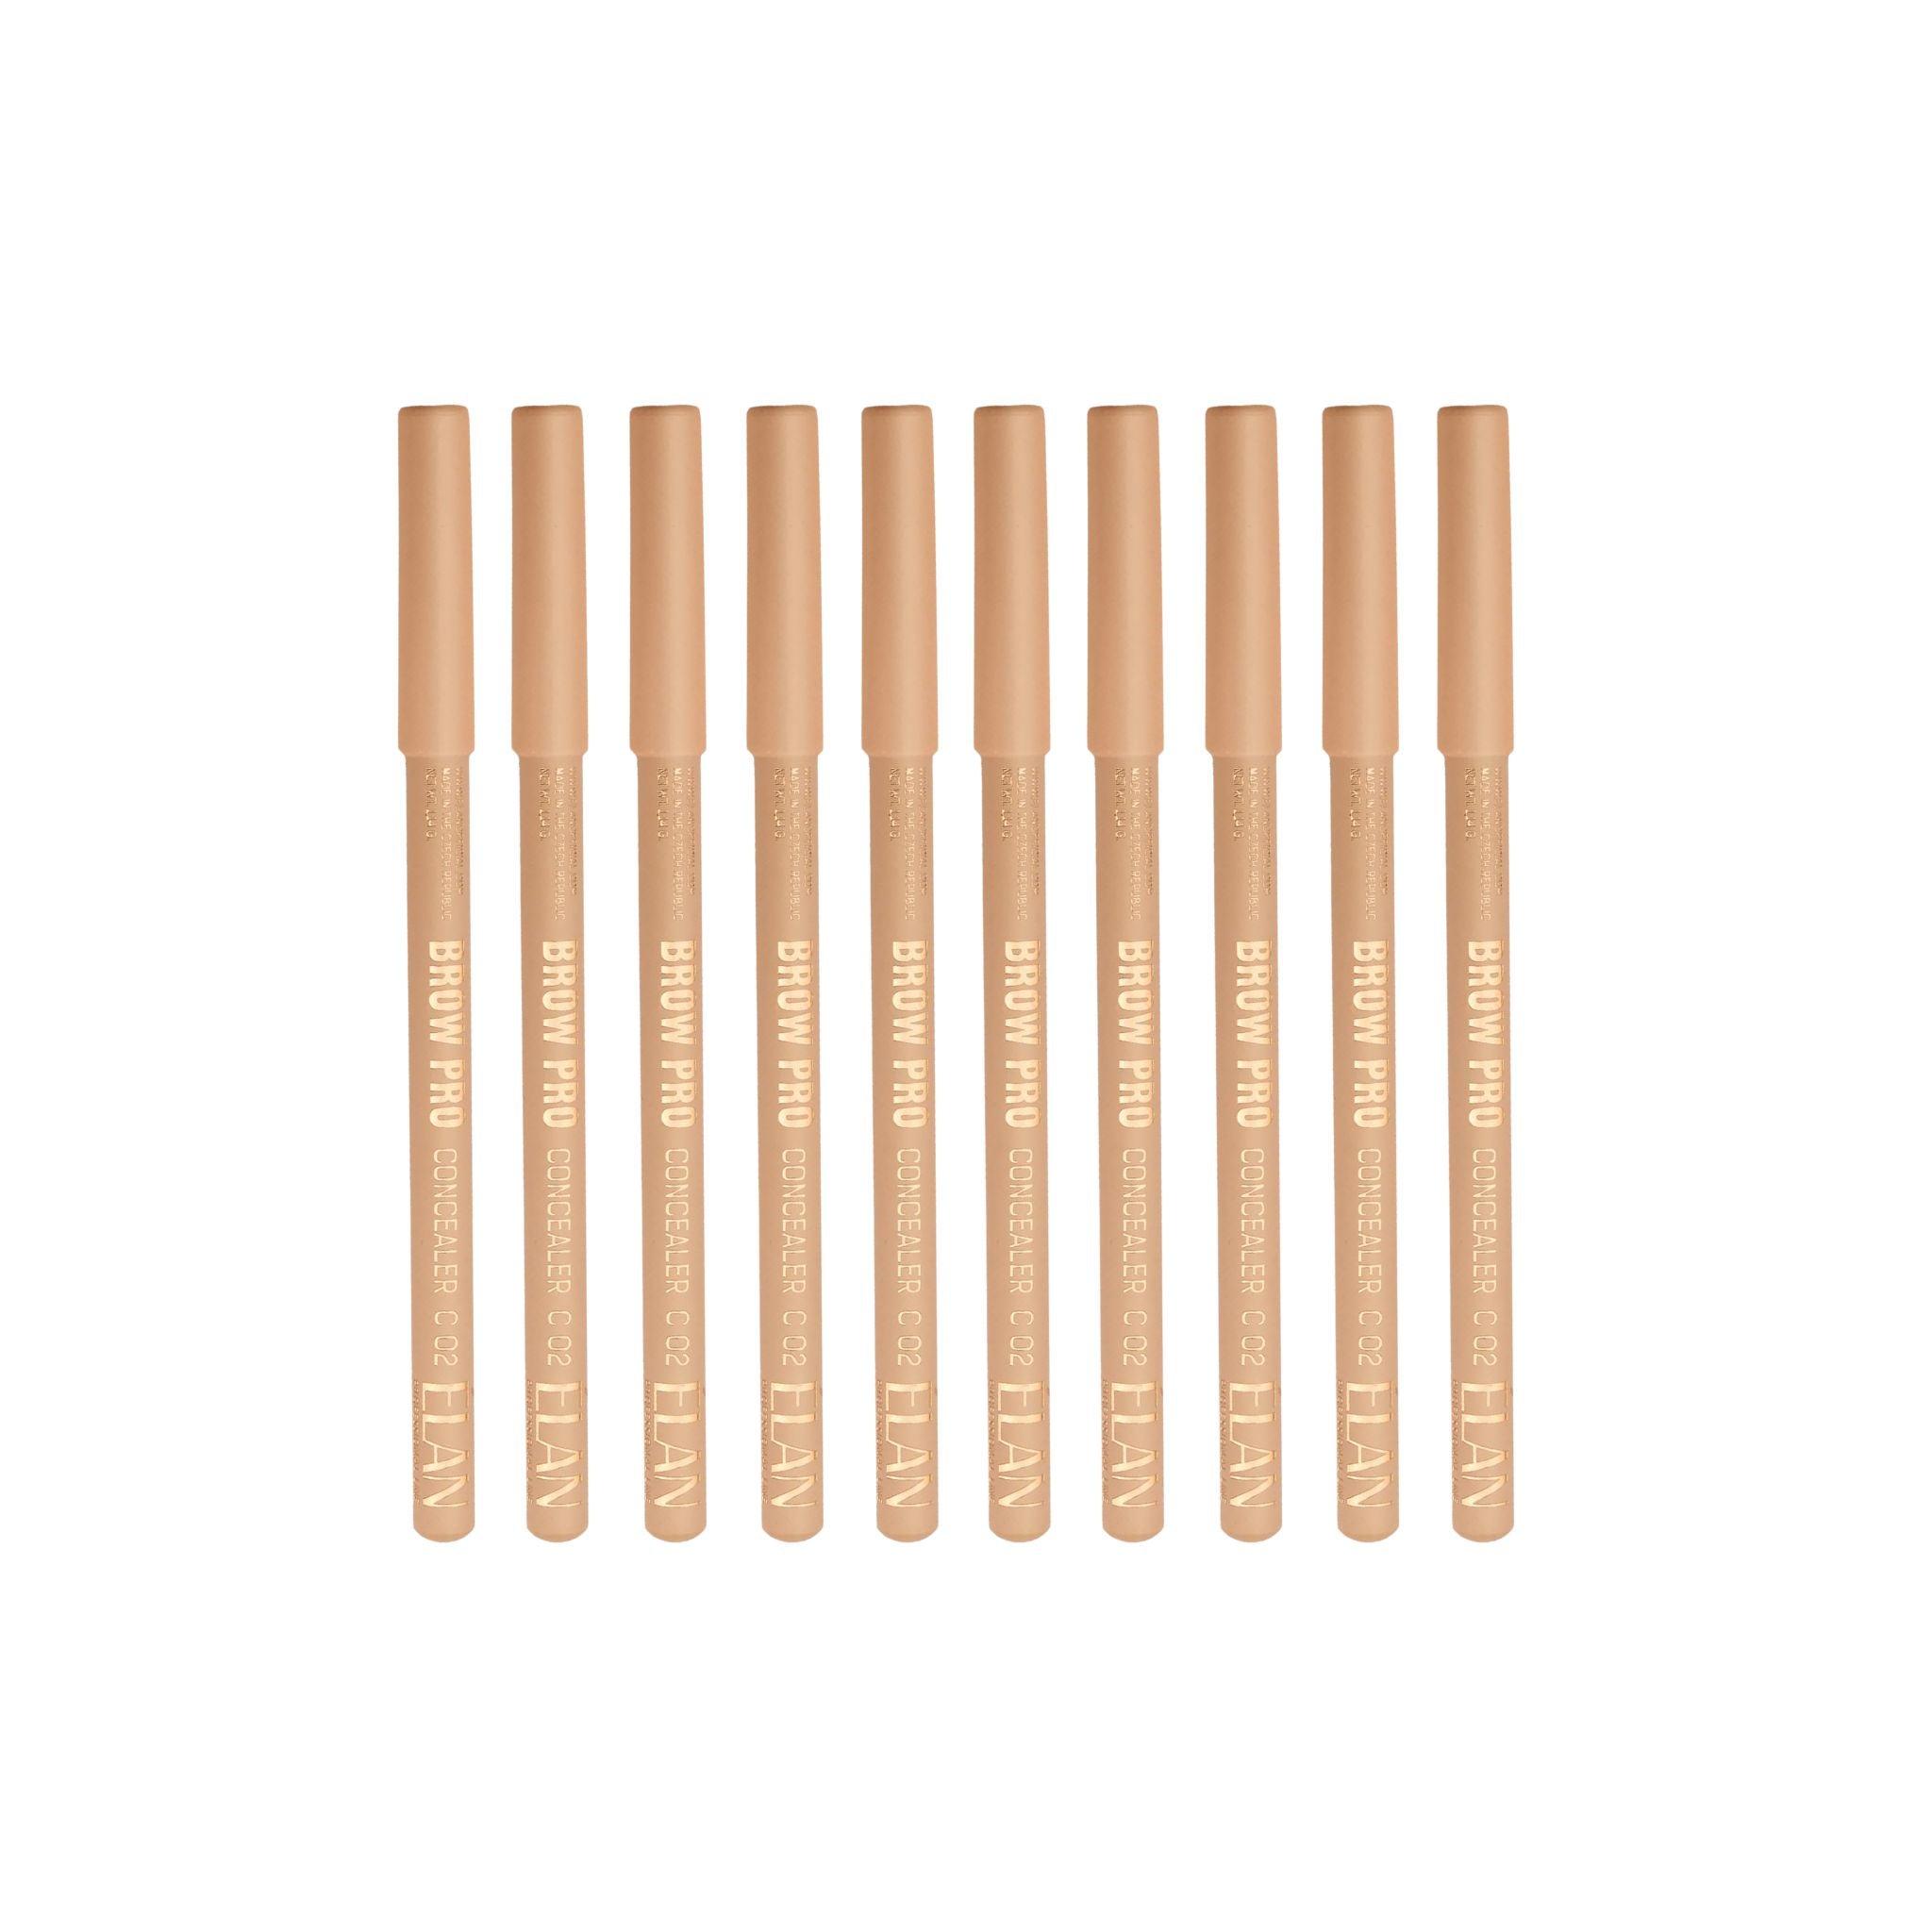 Elan Multi-Purpose Concealer Pencil Retail Bundle - The Beauty House Shop